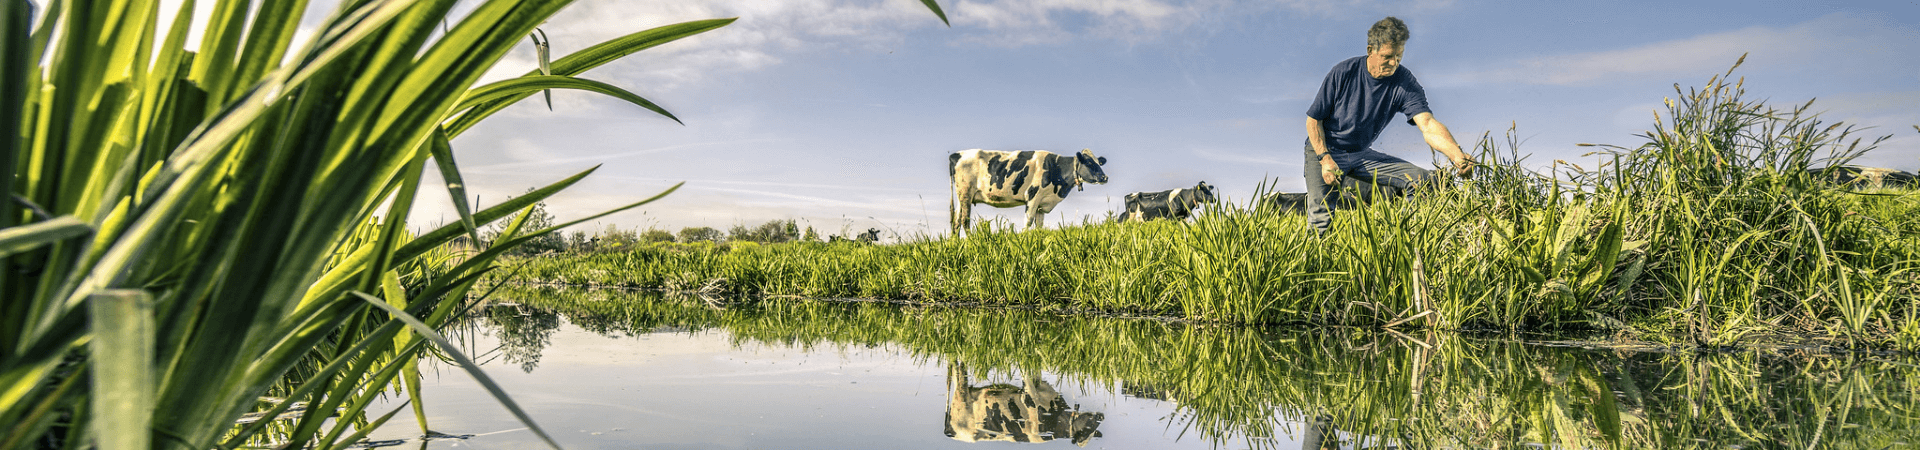 Man plukt gras langs de sloot met koeien op de achtergrond